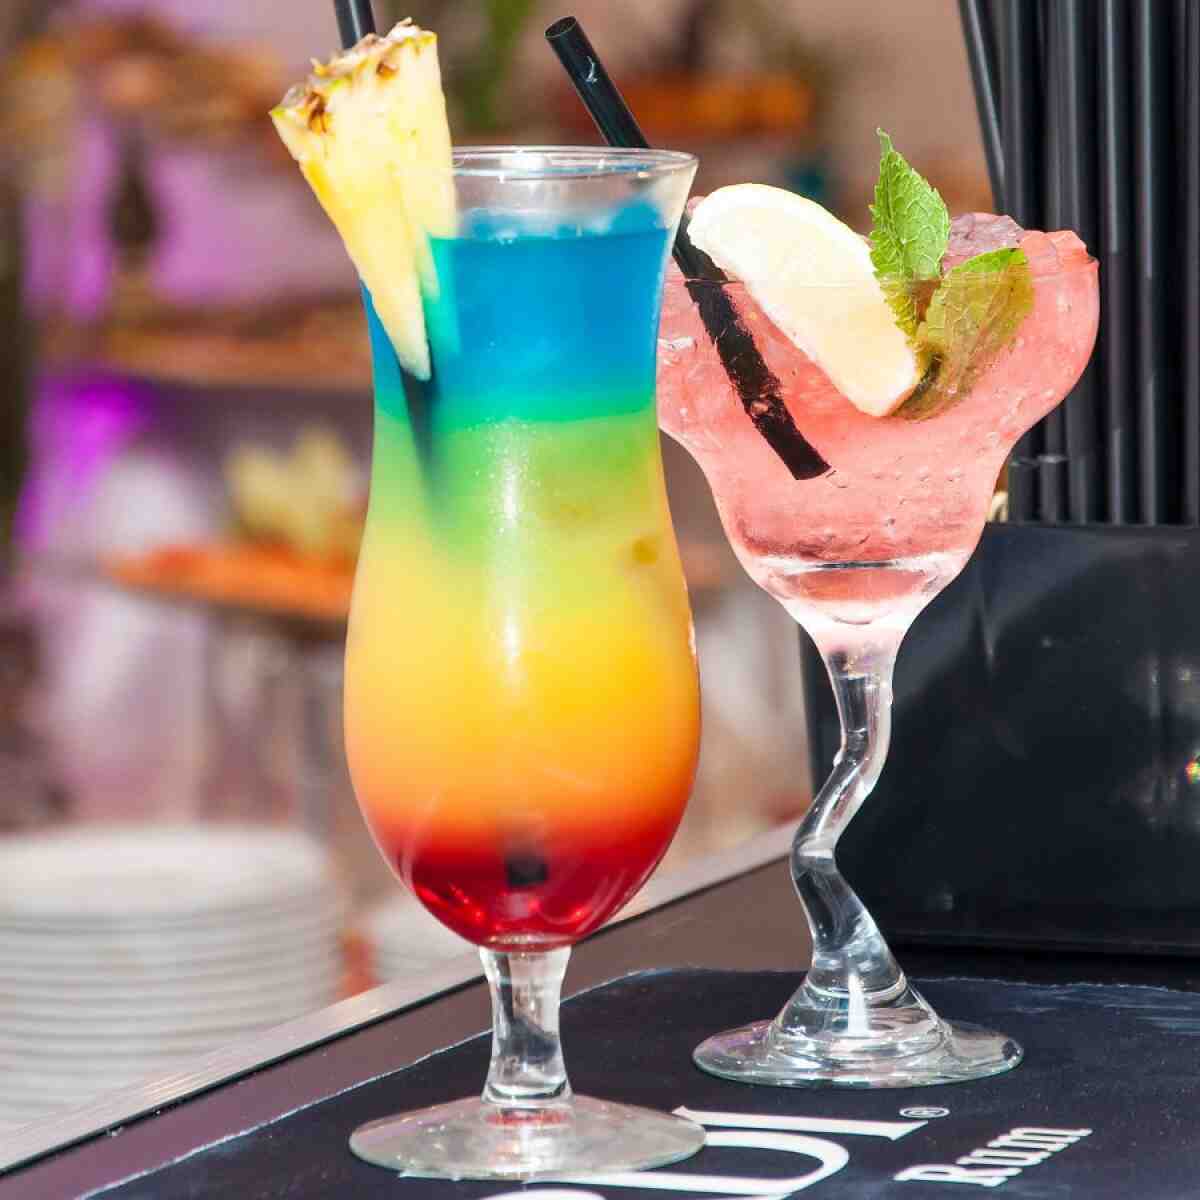 Comment doser un cocktail sans verre?